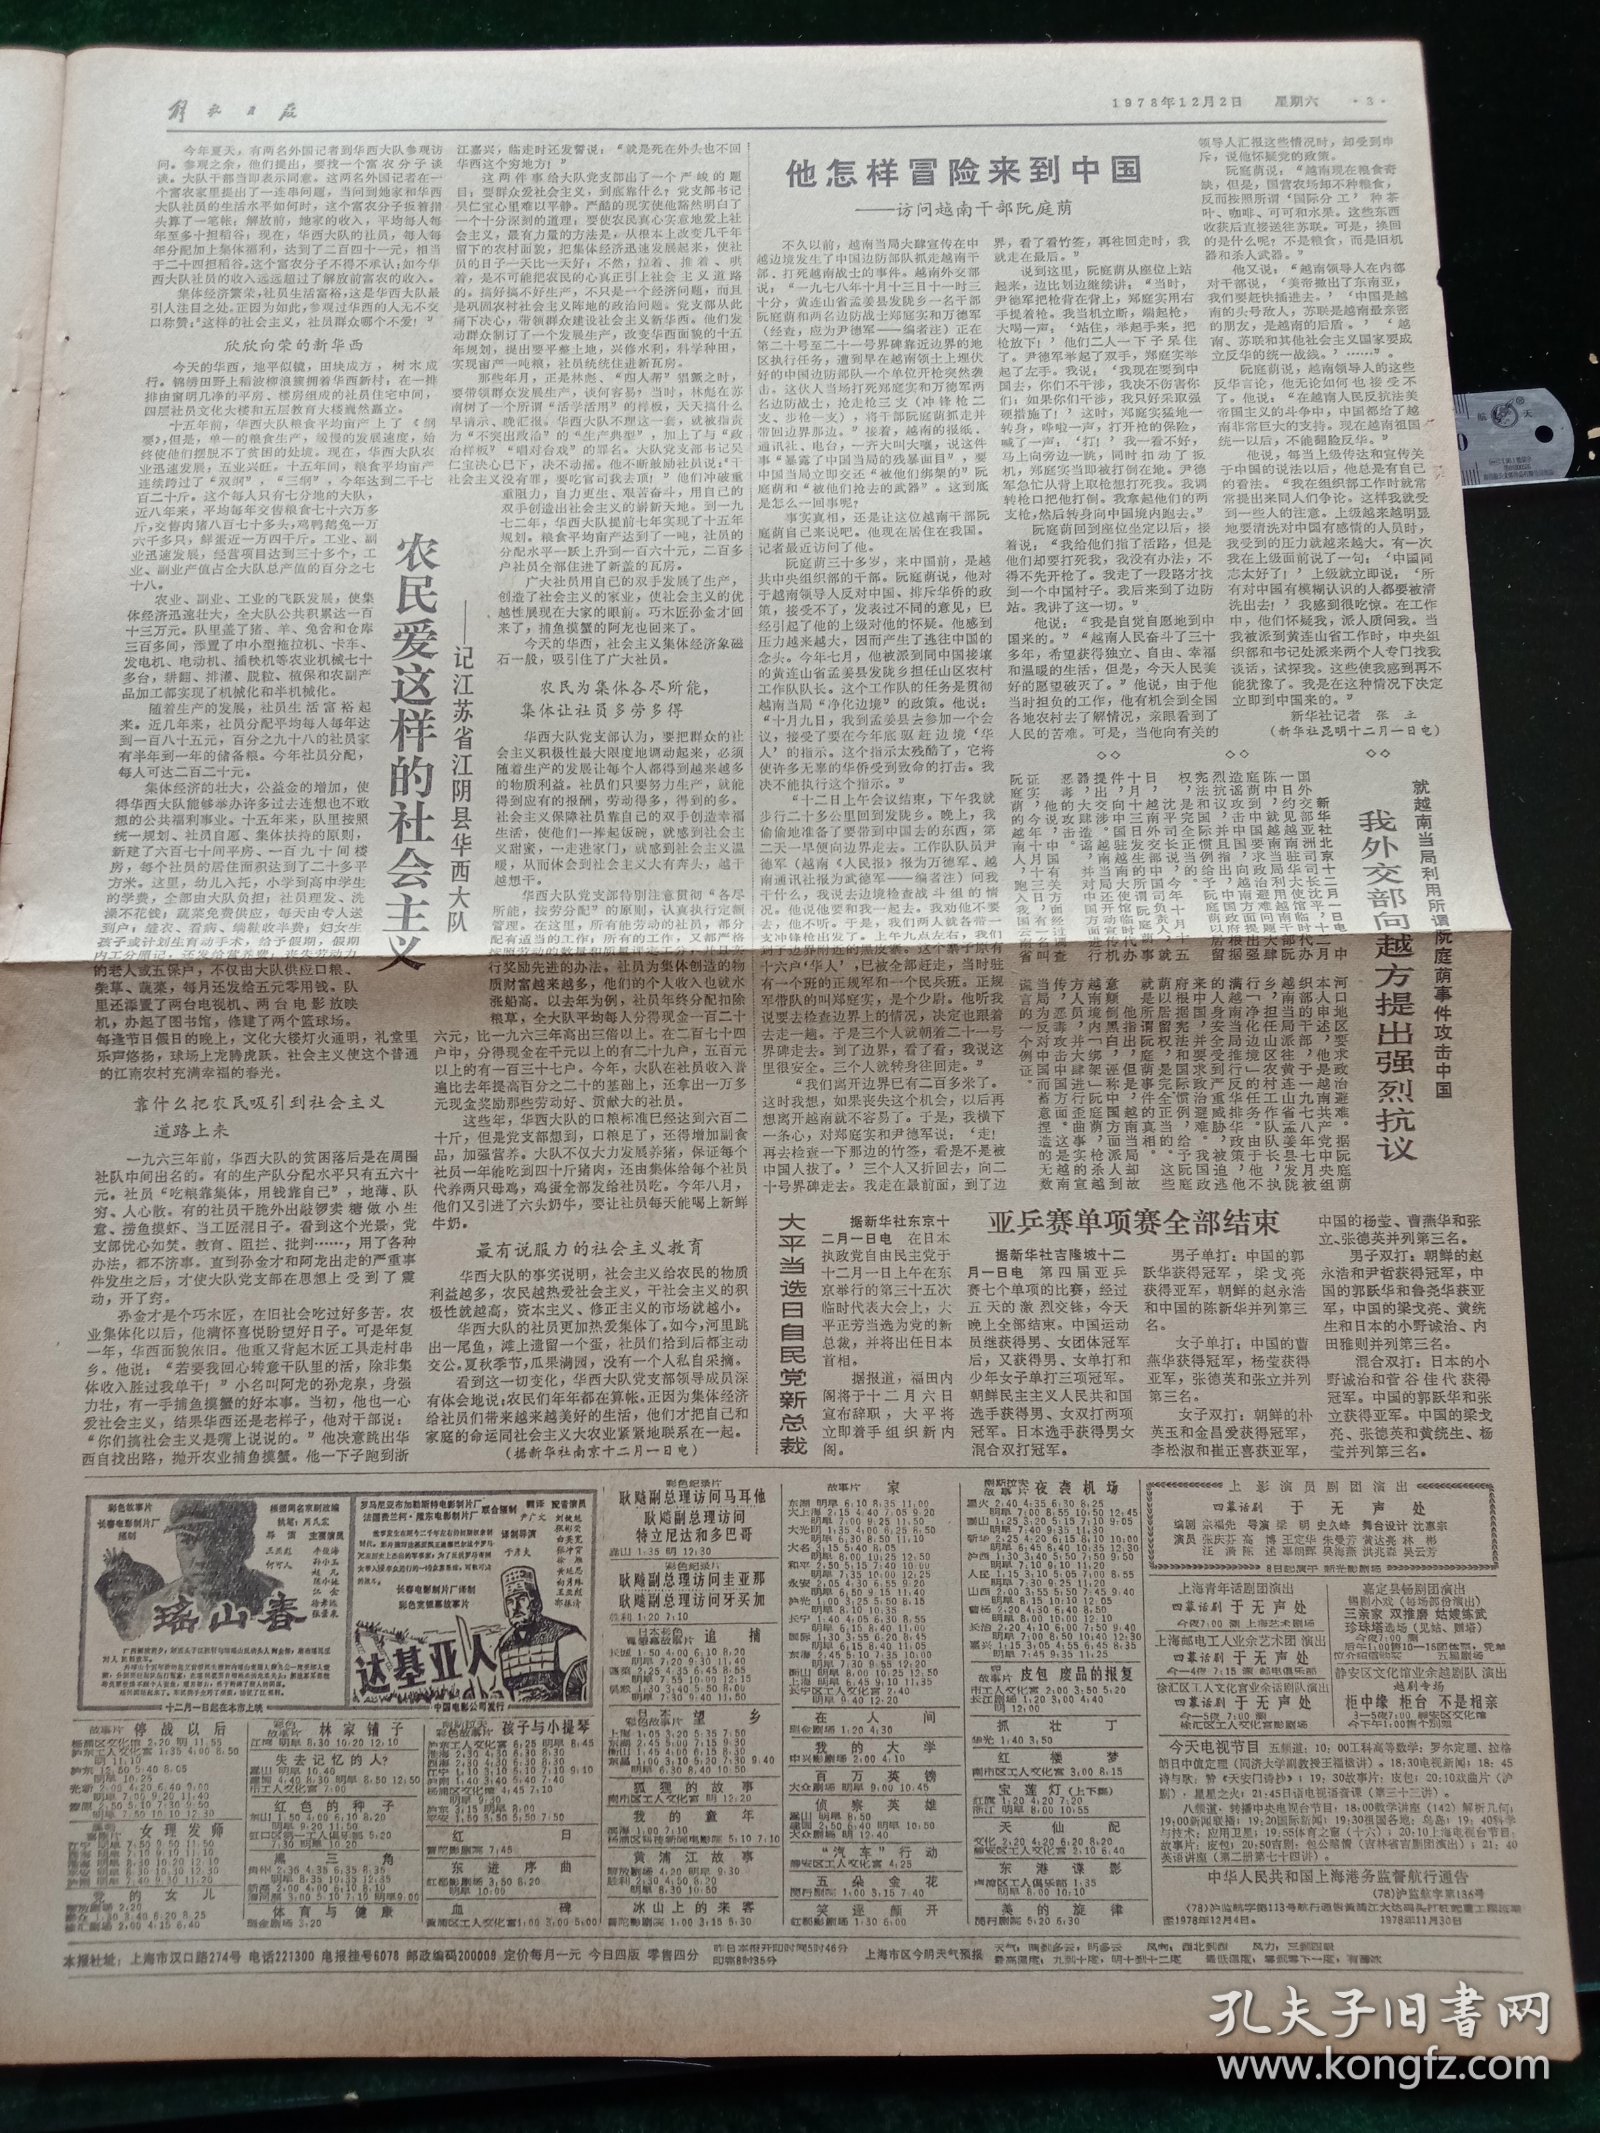 解放日报，1978年12月2日党和国家领导人接见参加第八届亚运会的中国体育代表团；纪念中国人民银行成立三十周年，其它详情见图，对开四版。